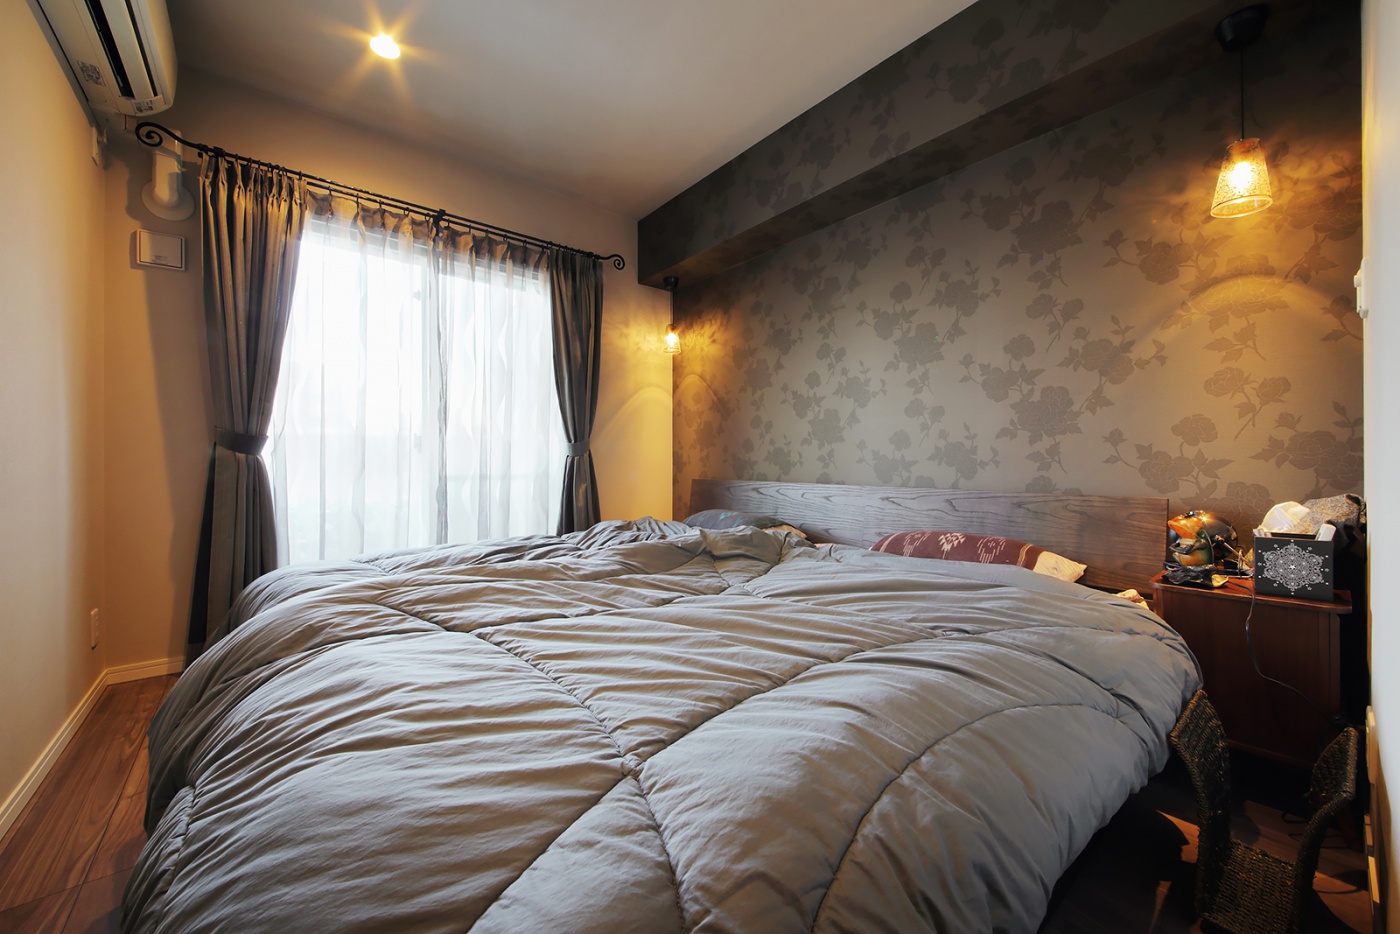 寝室はシックな色合いのアクセントクロスを使って落ち着ける雰囲気に。